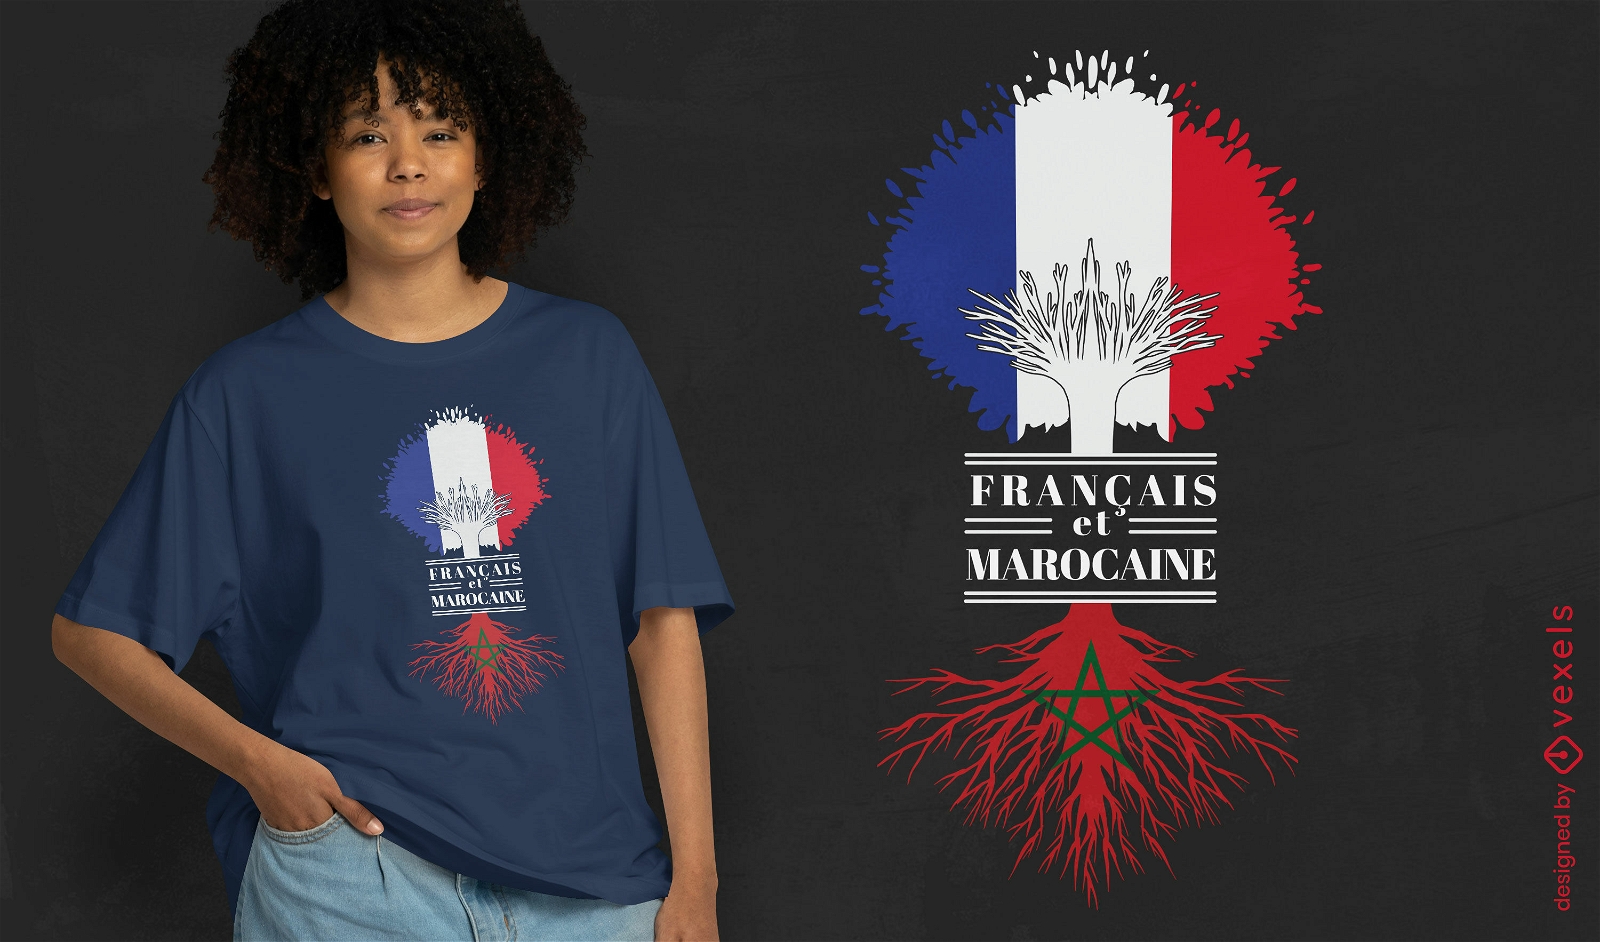 Diseño de camiseta francesa y marroquí.